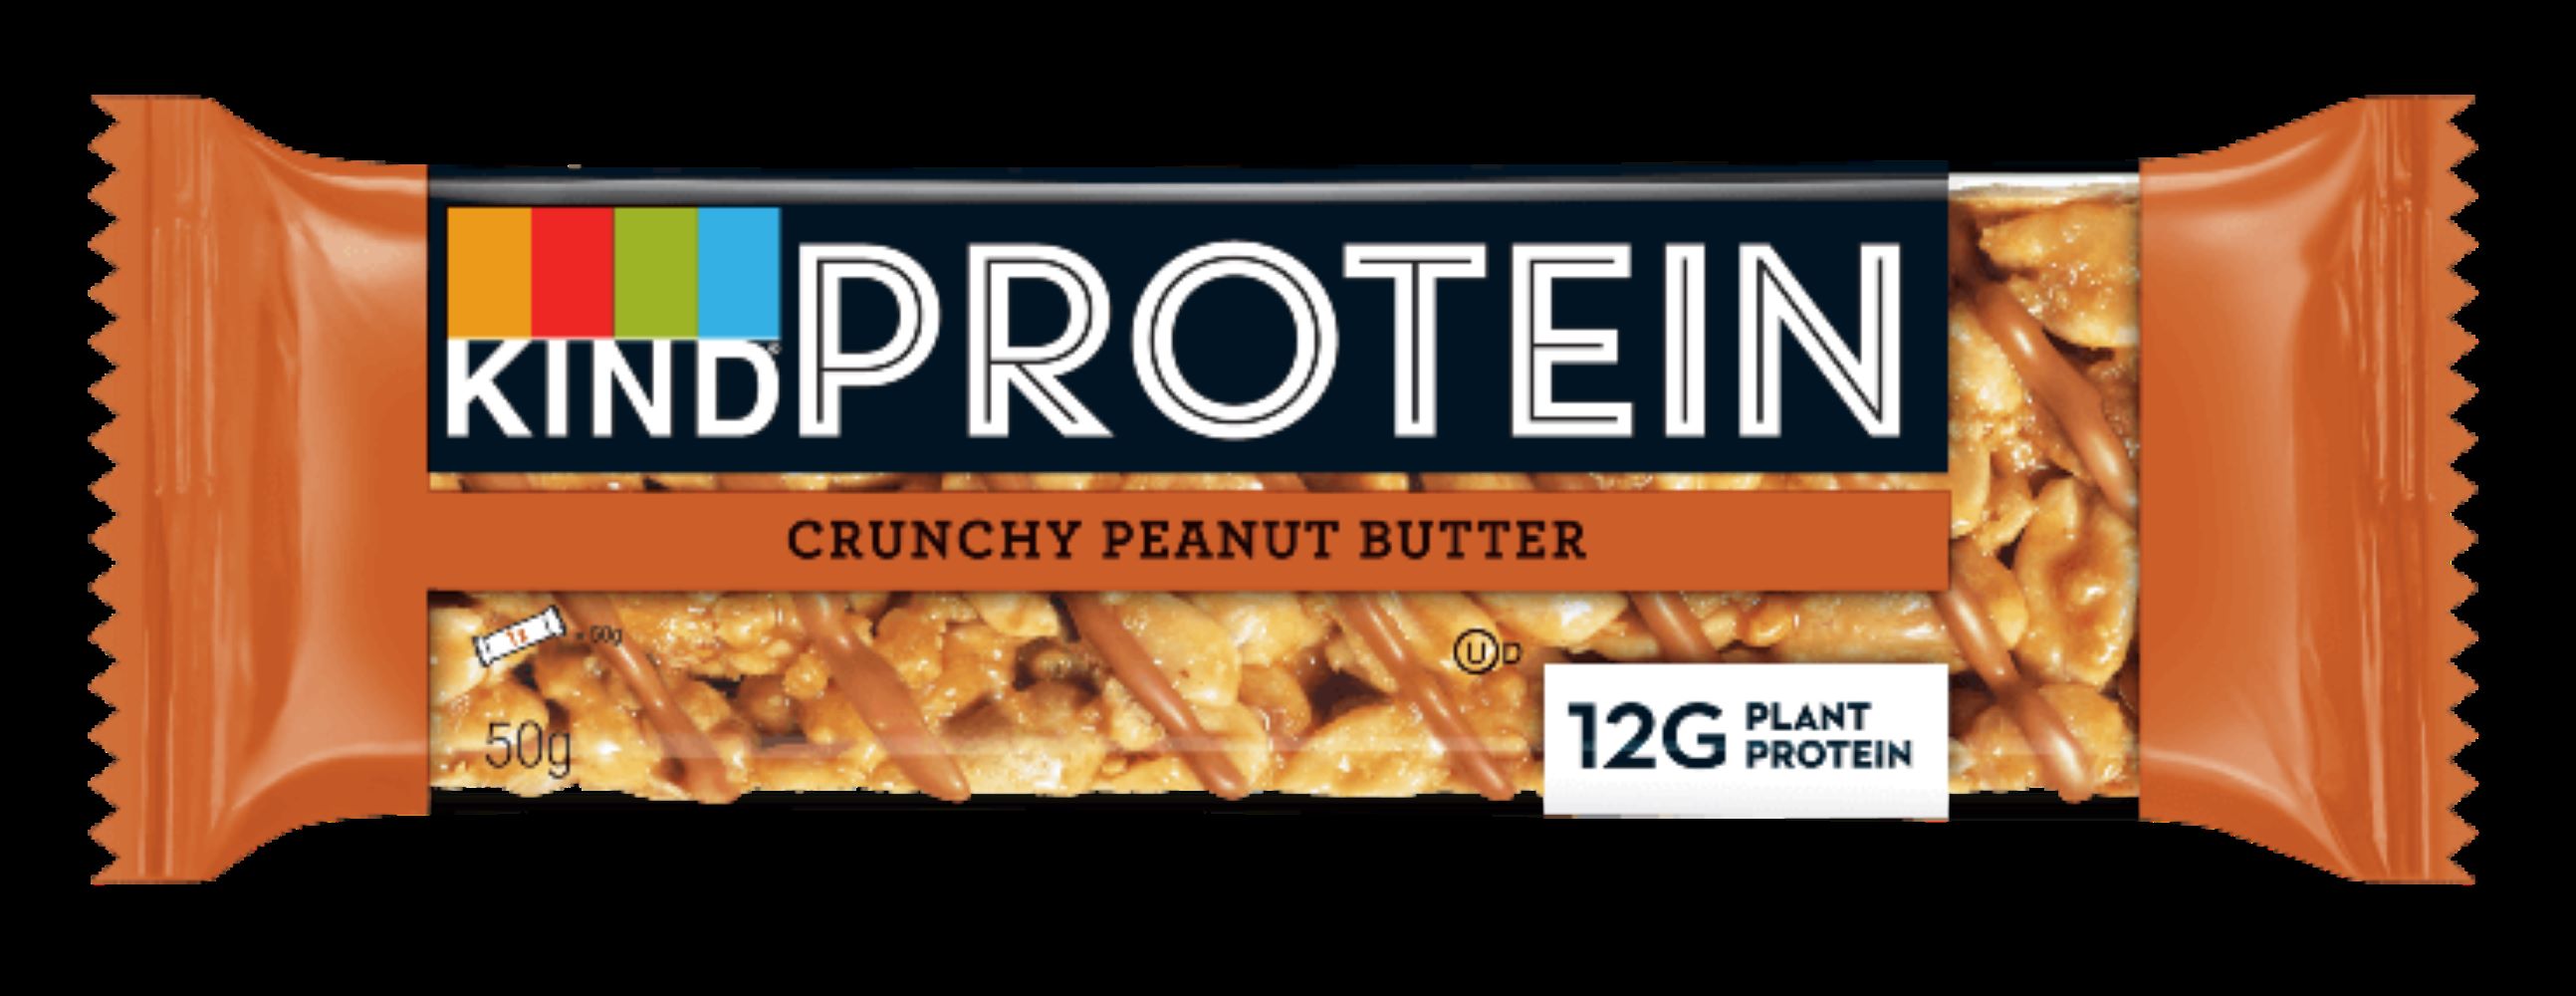 Protein Crunchy Peanut Butter